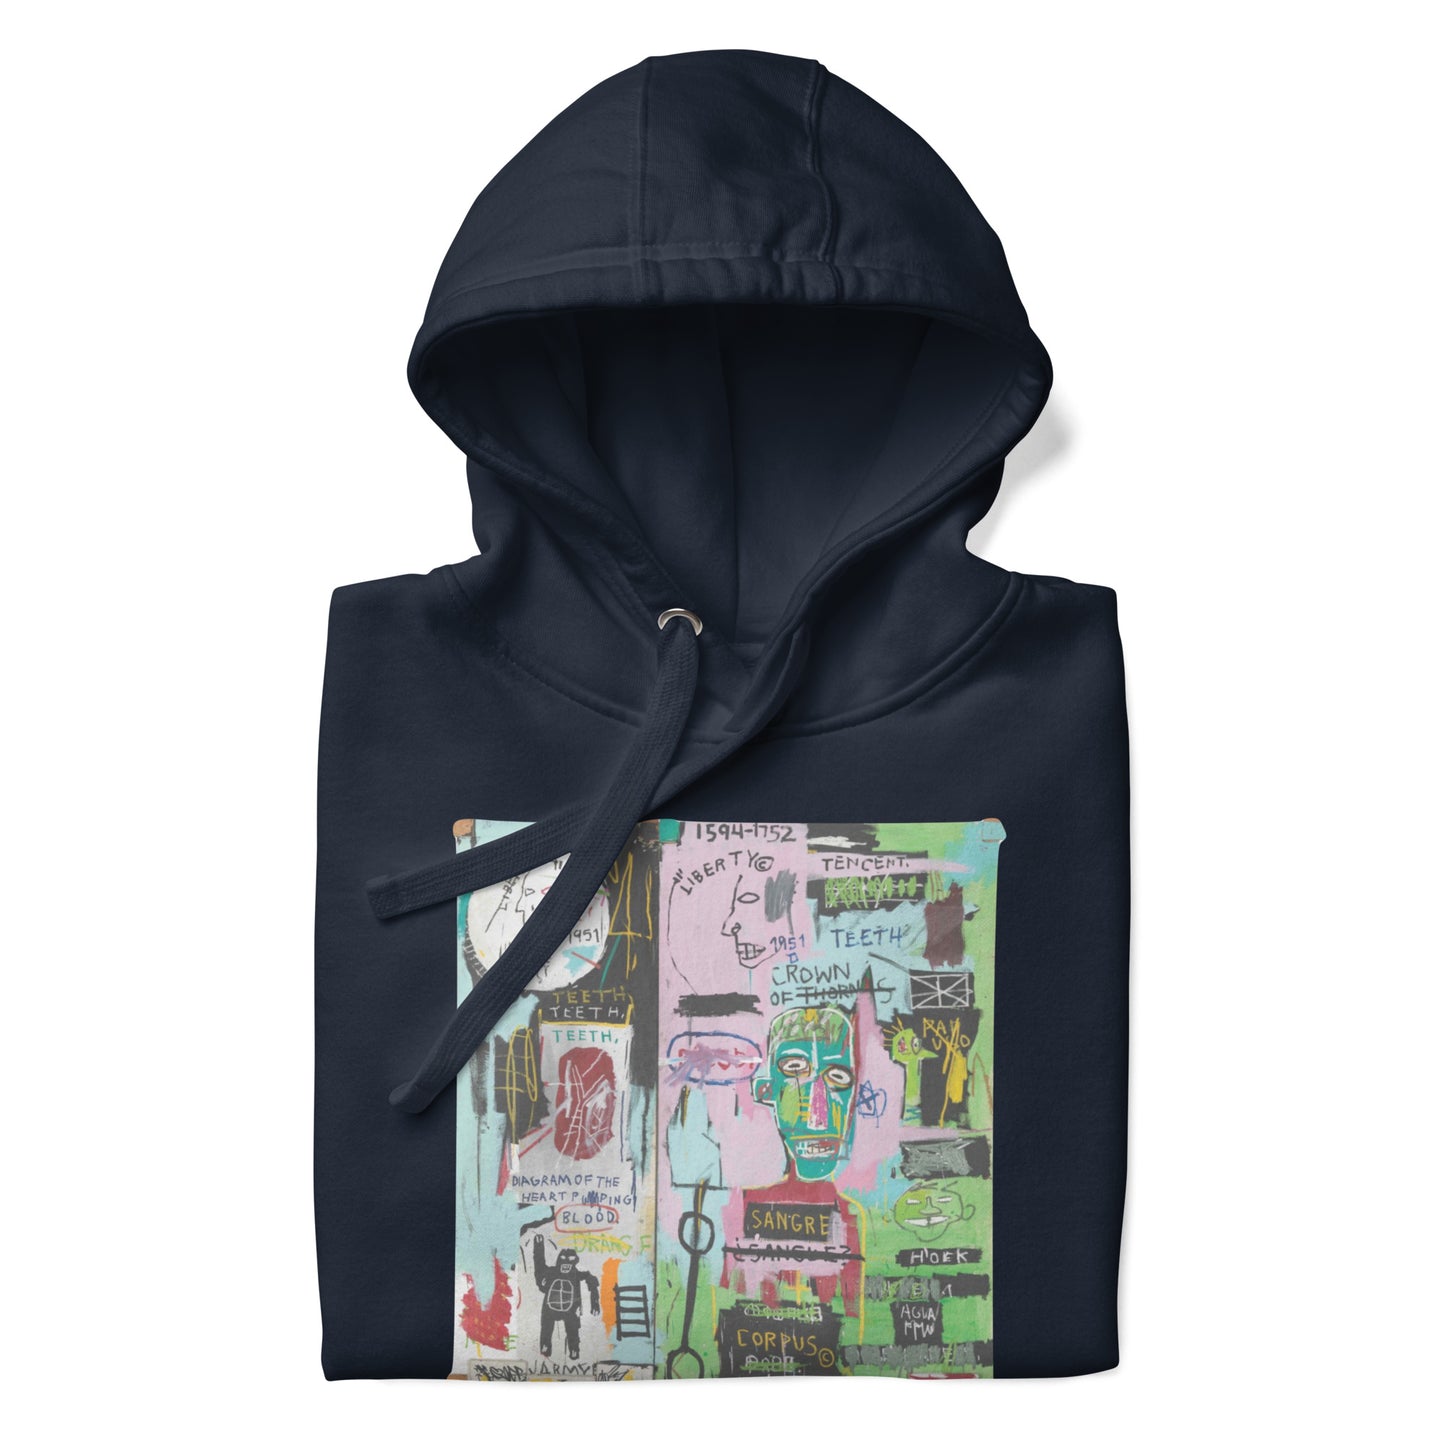 Jean-Michel Basquiat "In Italian" Artwork Printed Premium Streetwear Sweatshirt Hoodie Navy Blue